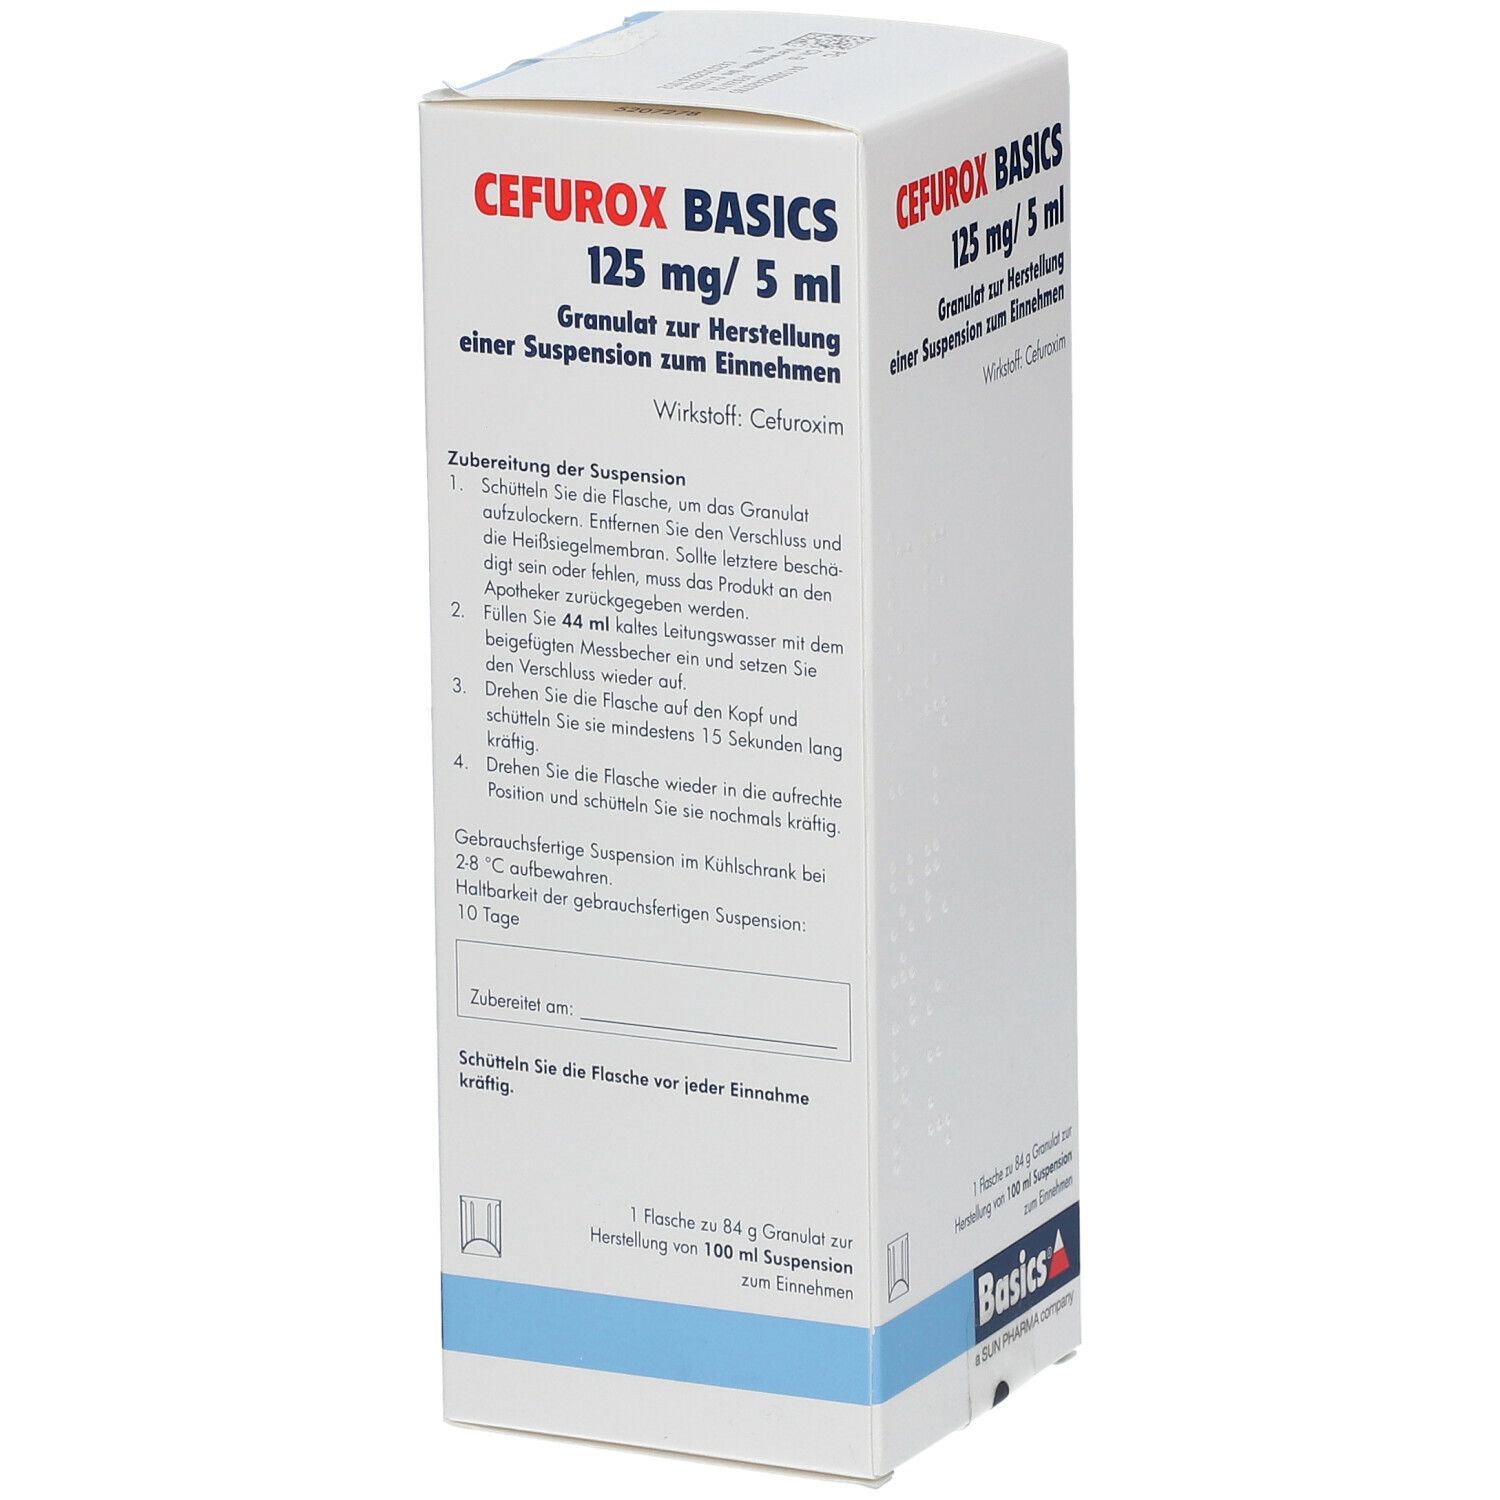 Cefurox basics 500 mg nebenwirkungen